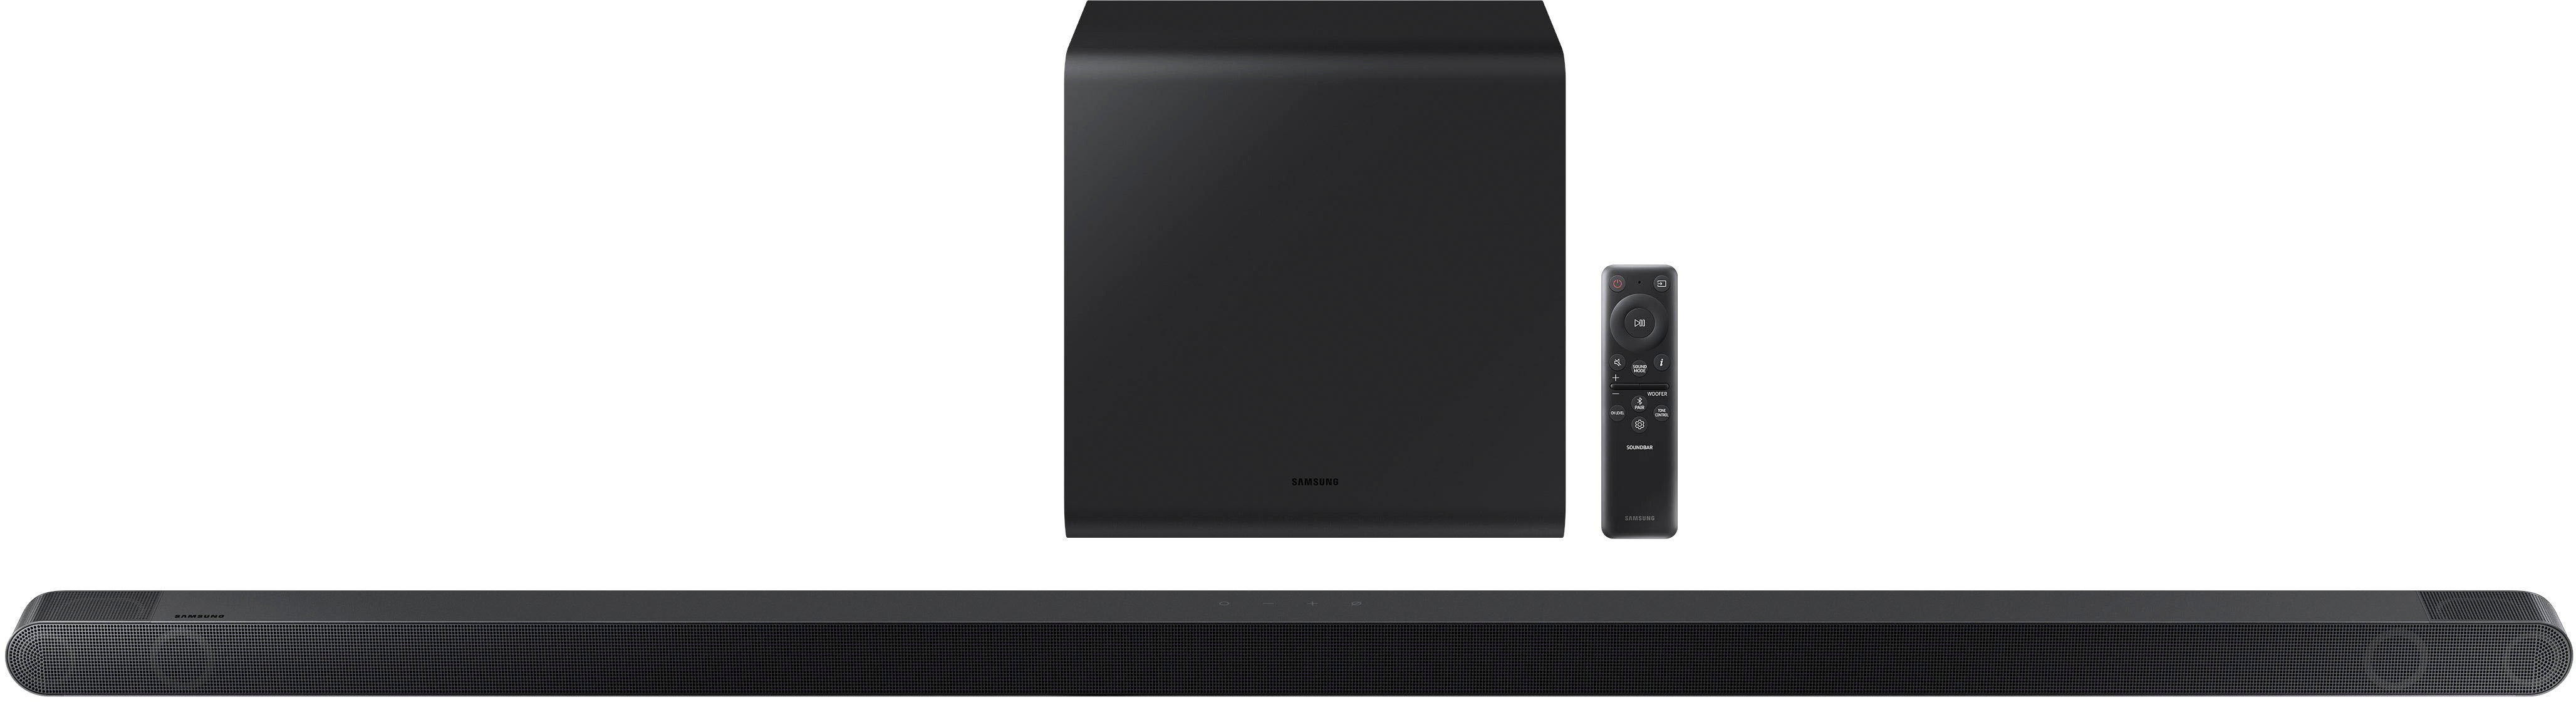 Samsung HW-S800B 3.1.2ch Soundbar with Wireless Dolby Atmos / DTS:X Black  HW-S800B/ZA - Best Buy